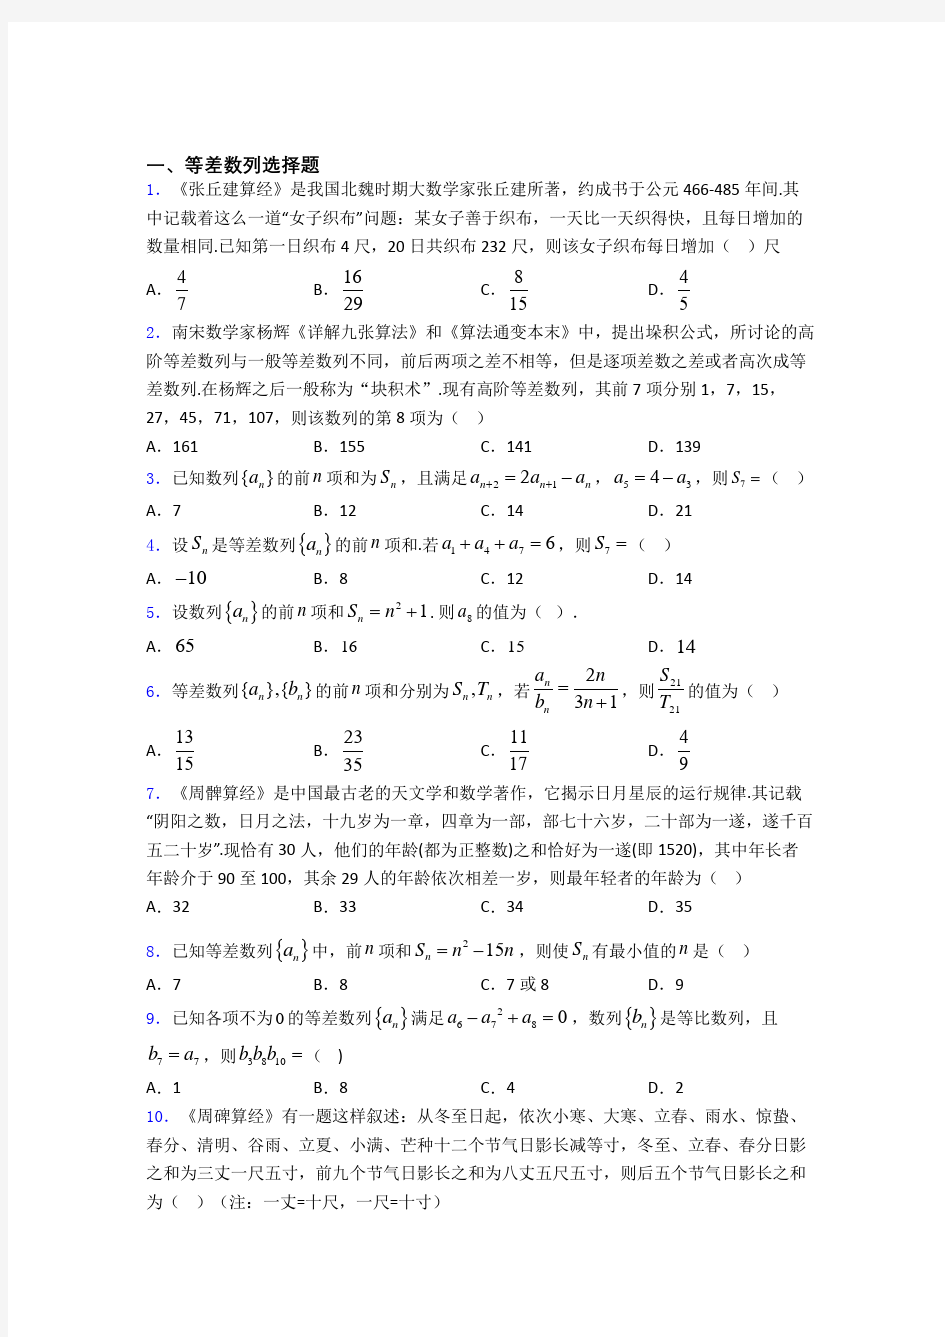 广东省中山市第一中学高考等差数列专题及答案